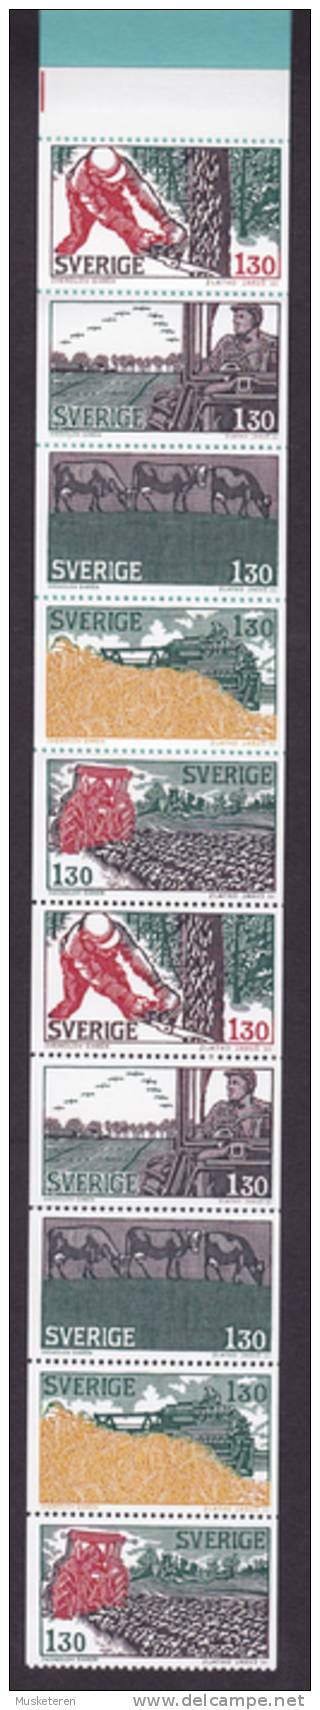 Sweden 1979 Markenheftchen Booklet MH-MiNr. 72    13.00 Kr Landwirtschaft (2 Scans) MNH** - 1951-80